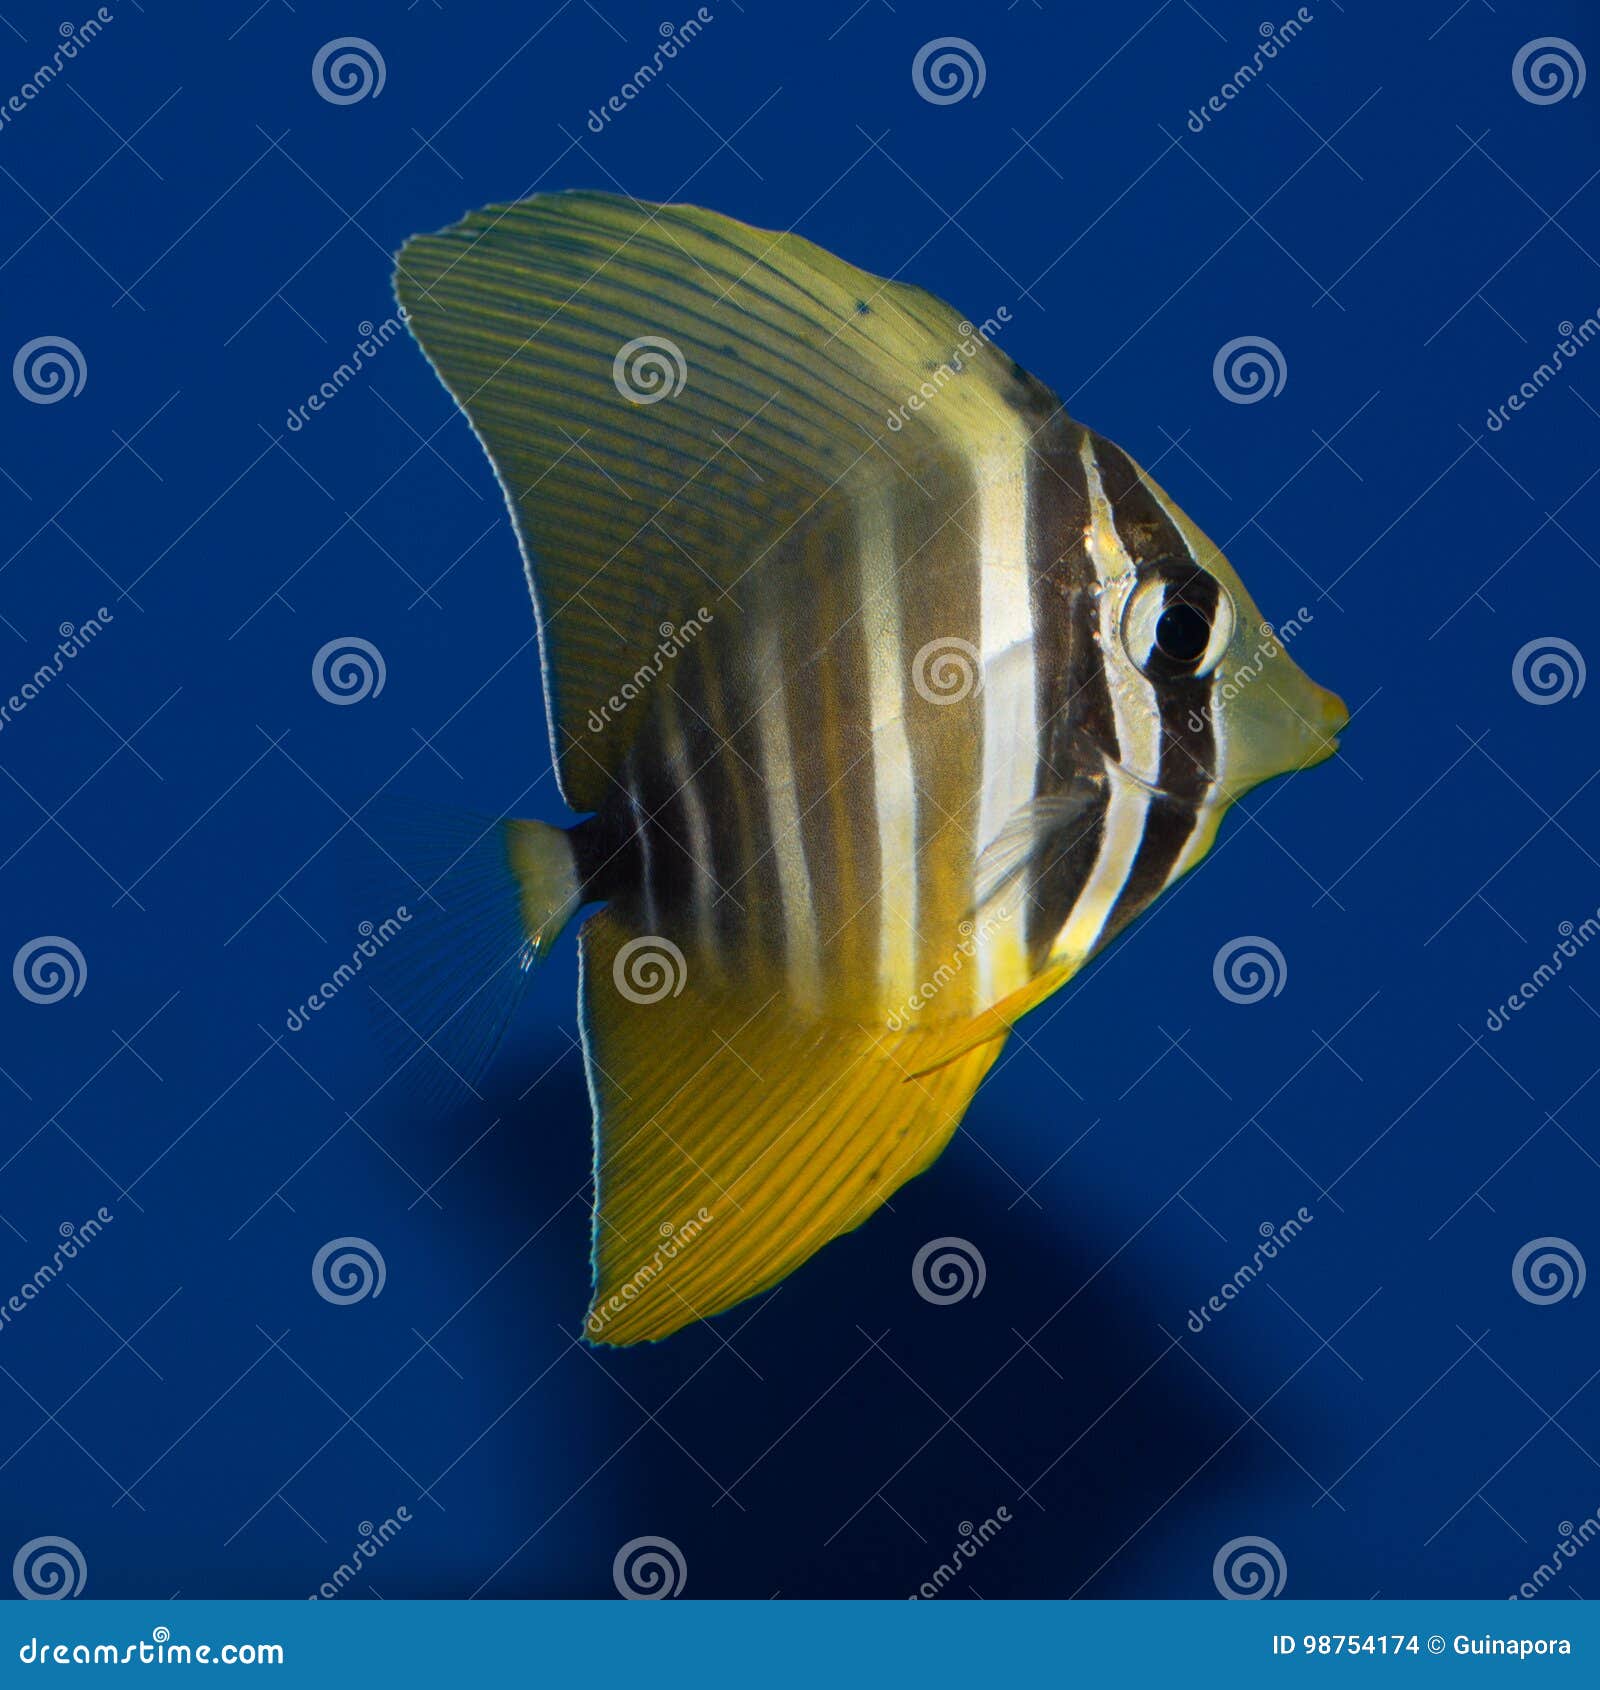 juvenile sailfin tang